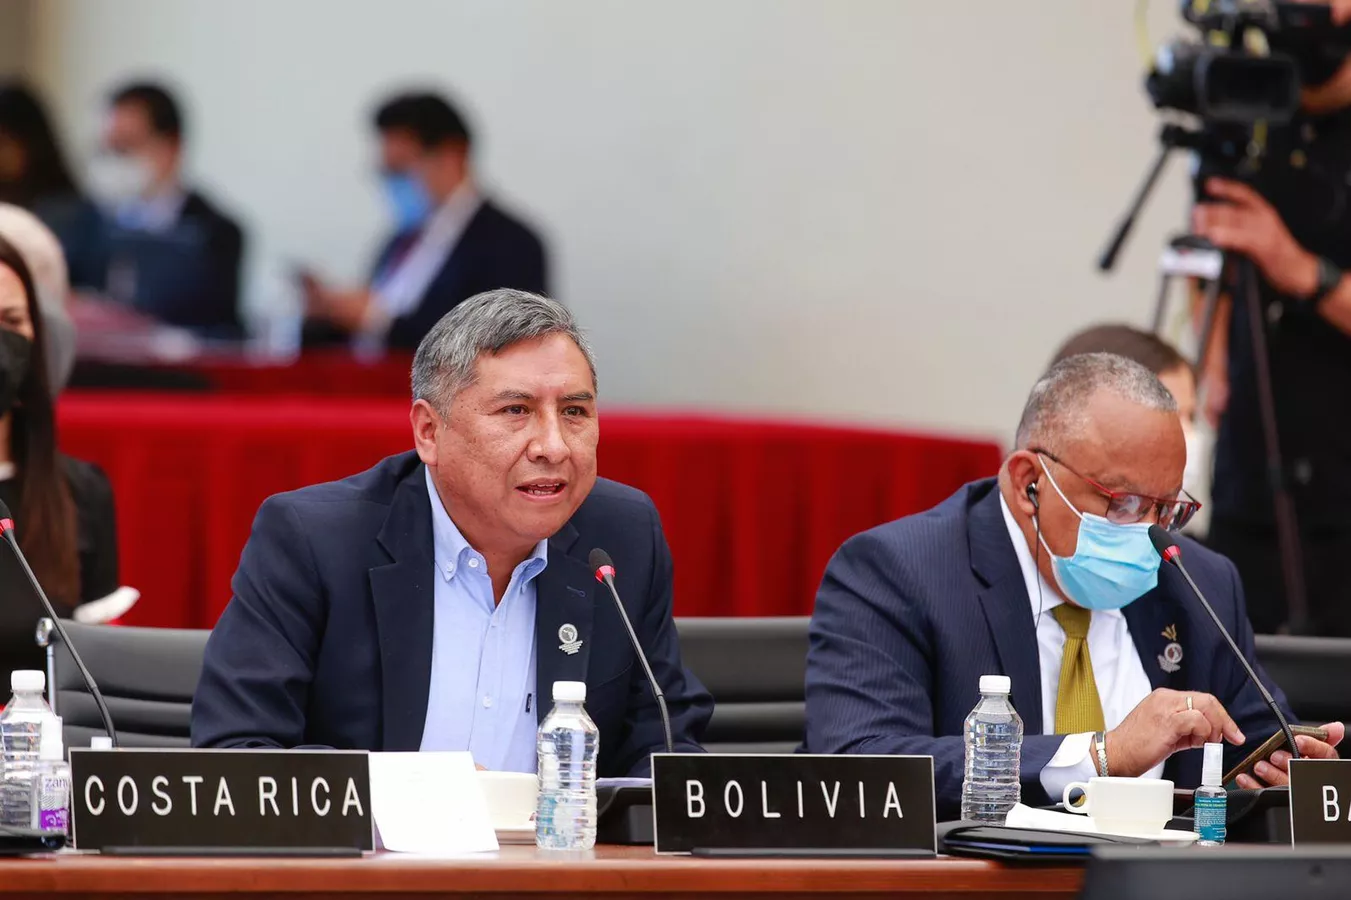  El canciller boliviano encabeza la defensa de su país contra Chile en un juicio en La Haya